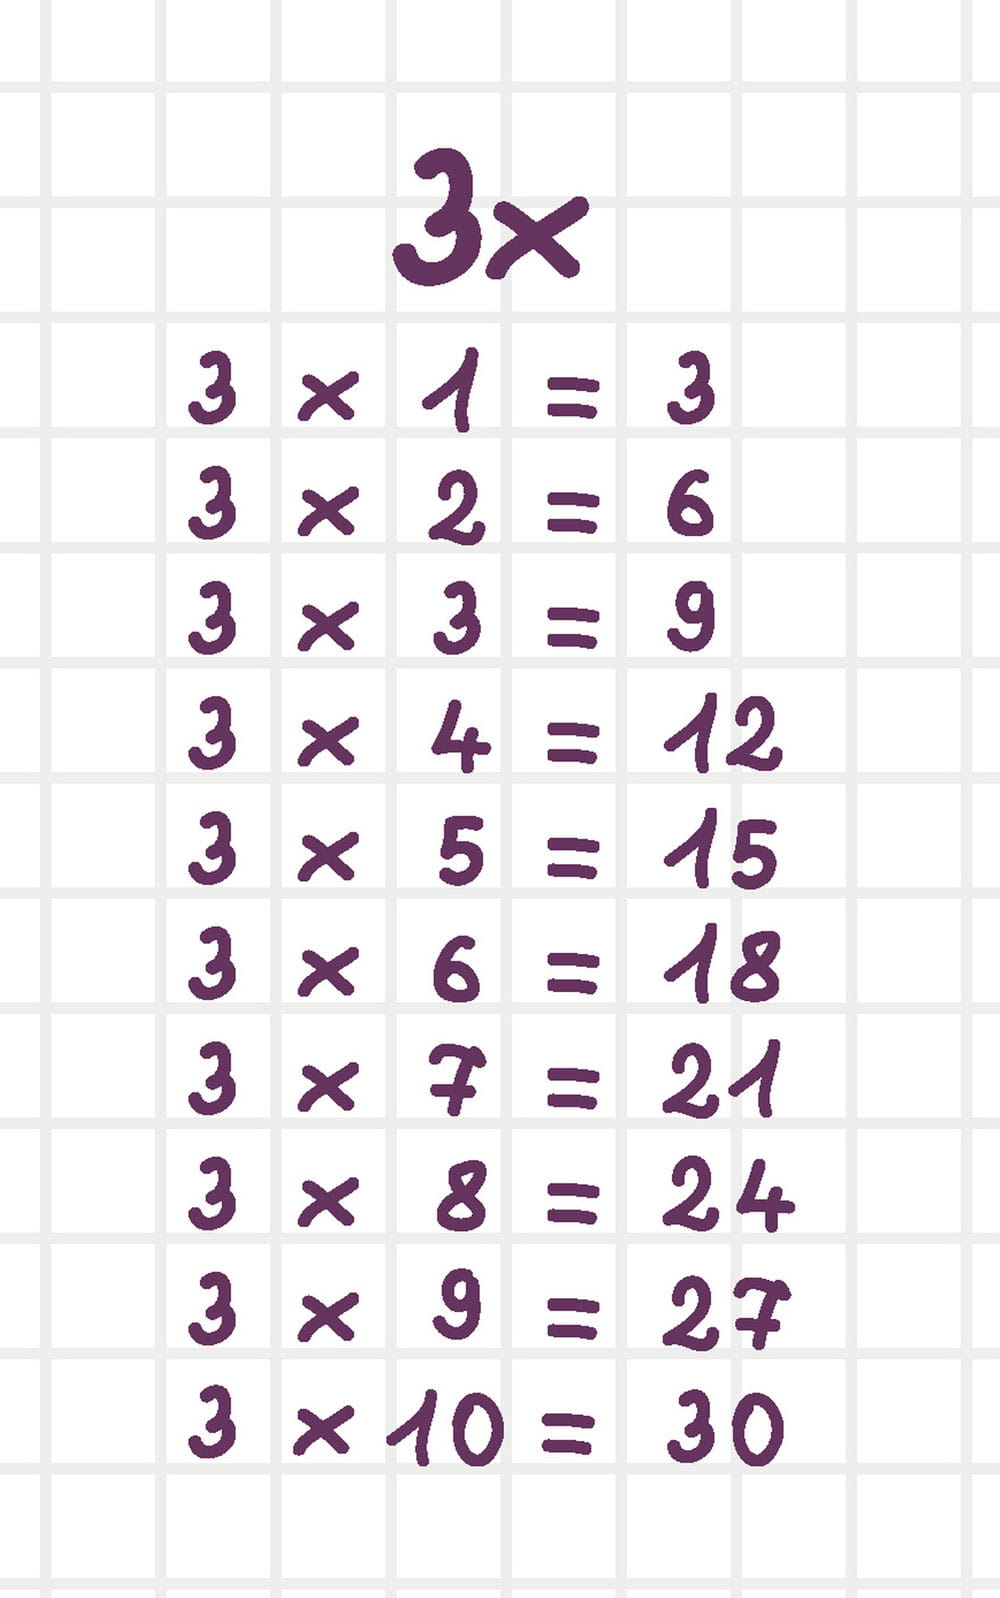 Fichas con tablas de multiplicar: una herramienta práctica para aprender matemáticas